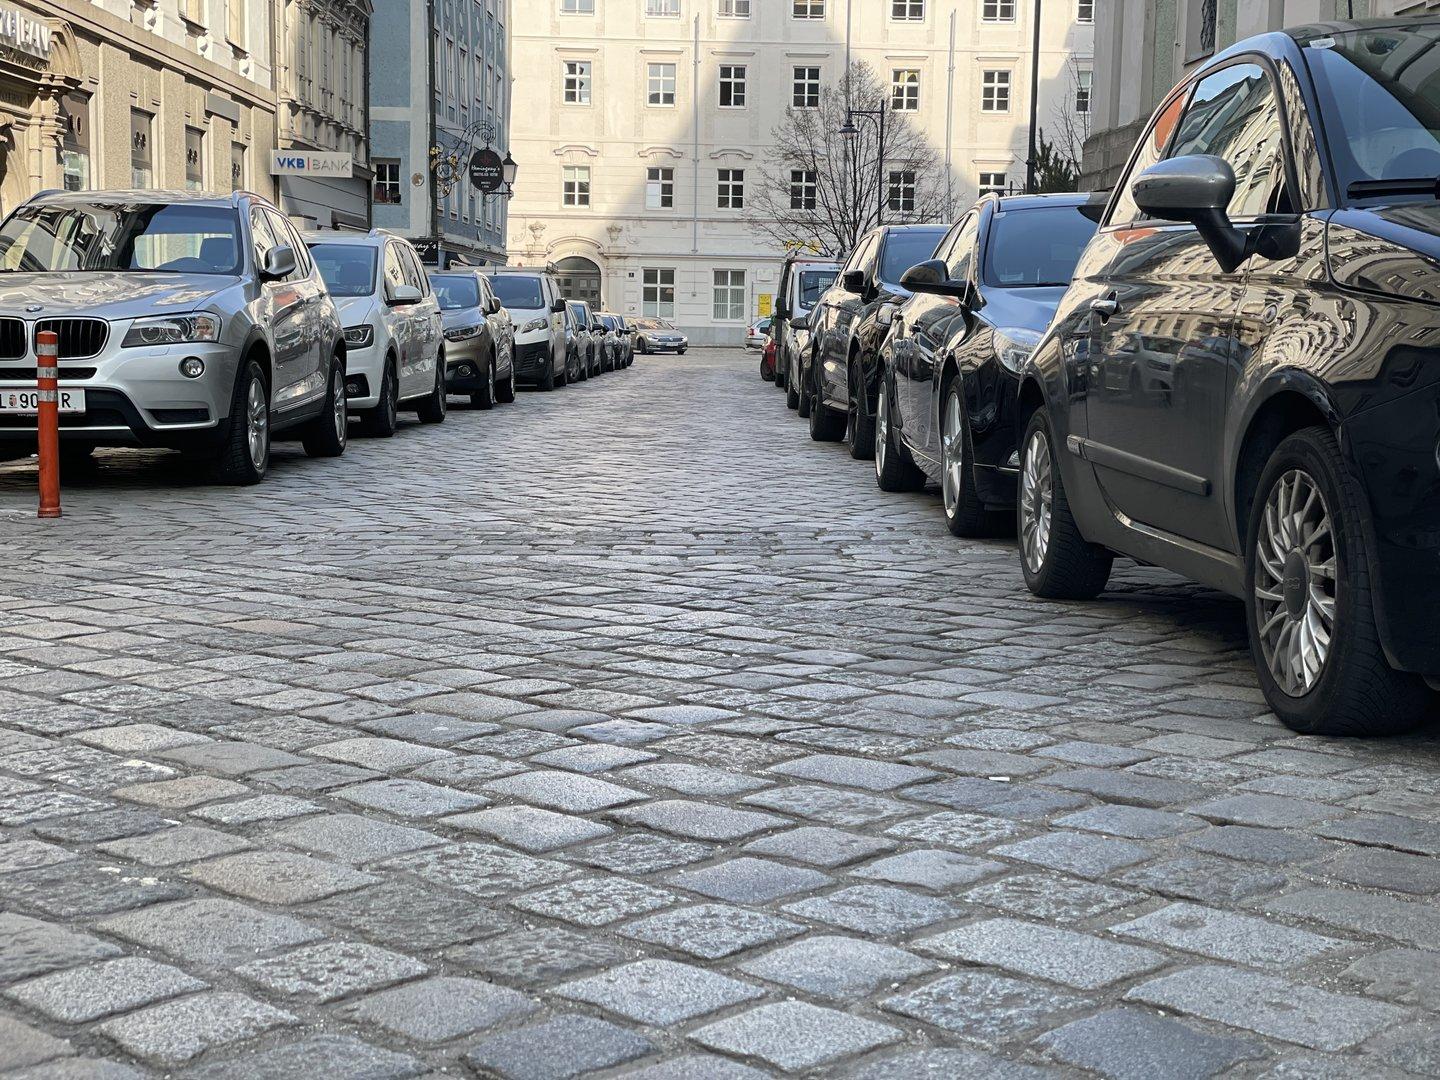 Domgasse in Linz wird verkehrsberuhigt mit weniger Parkplätzen